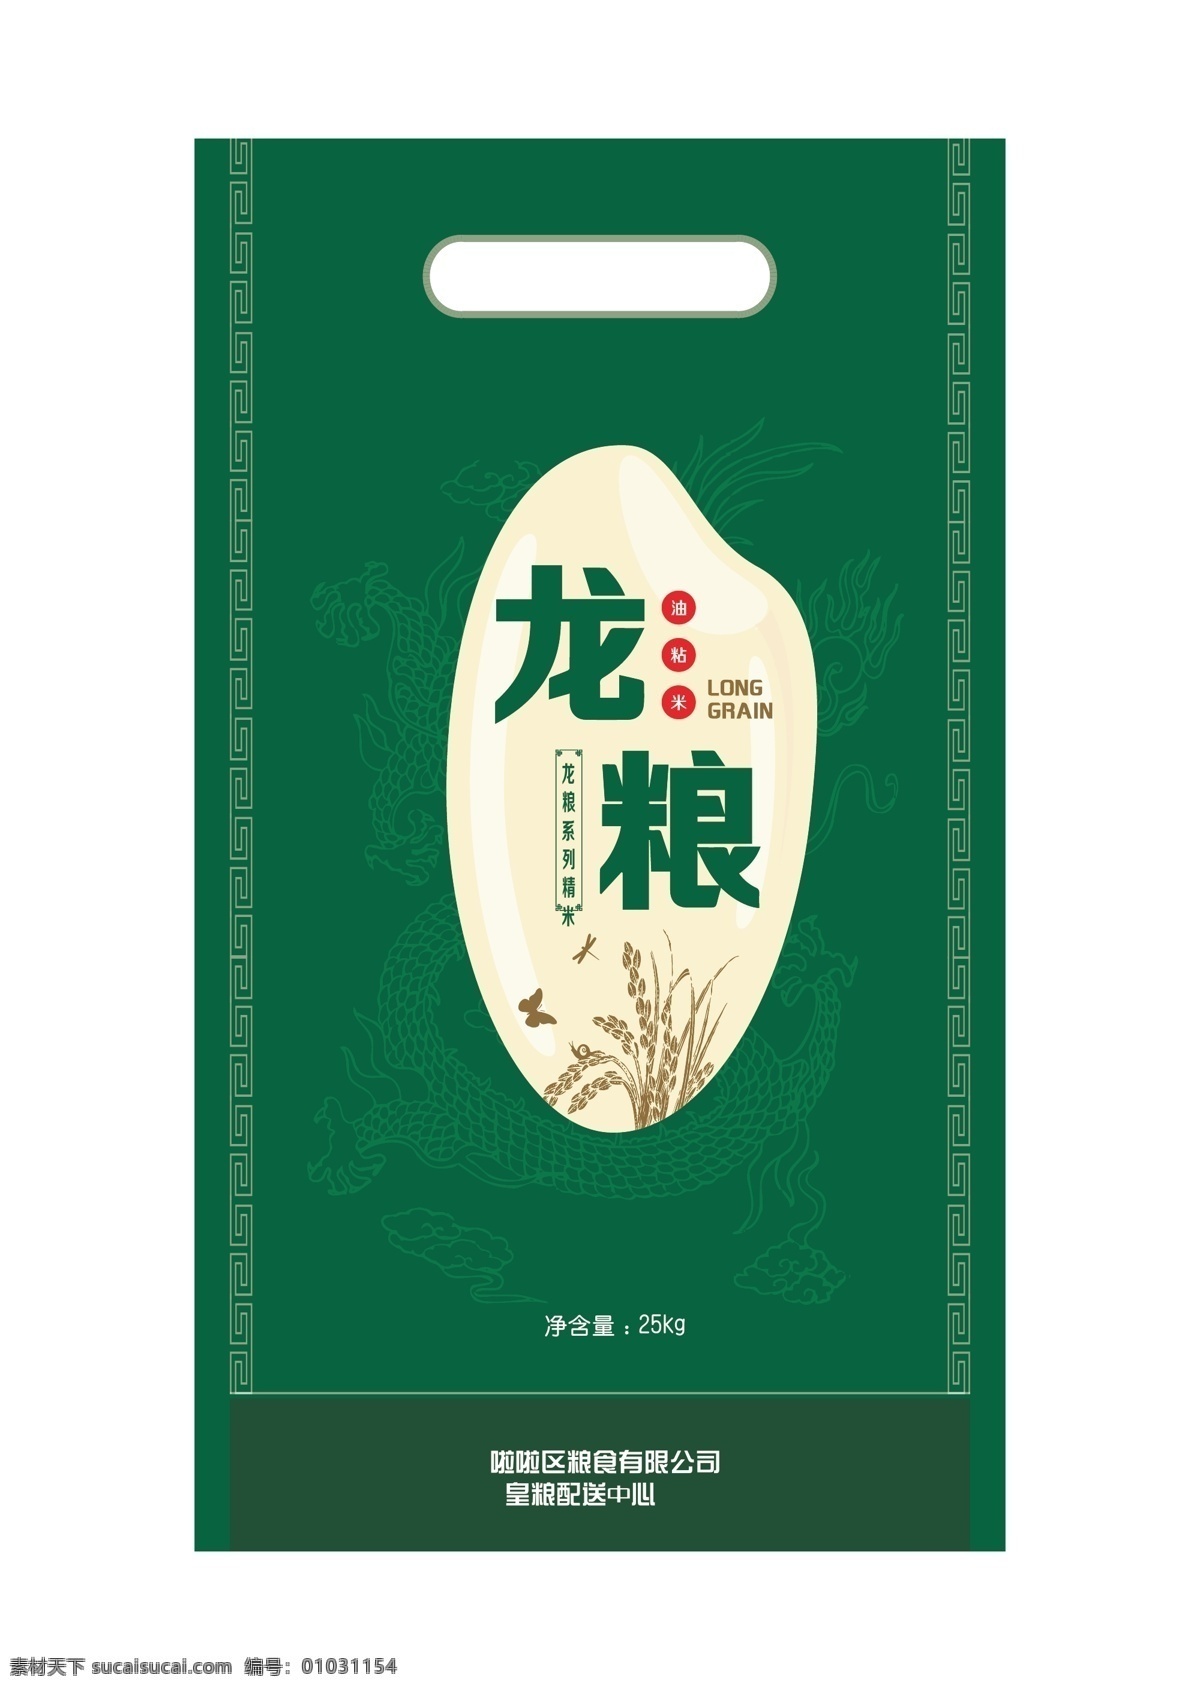 大米包装 稻花香 油粘米 稻穗 龙 纹样 蜻蜓 蝴蝶 包装设计